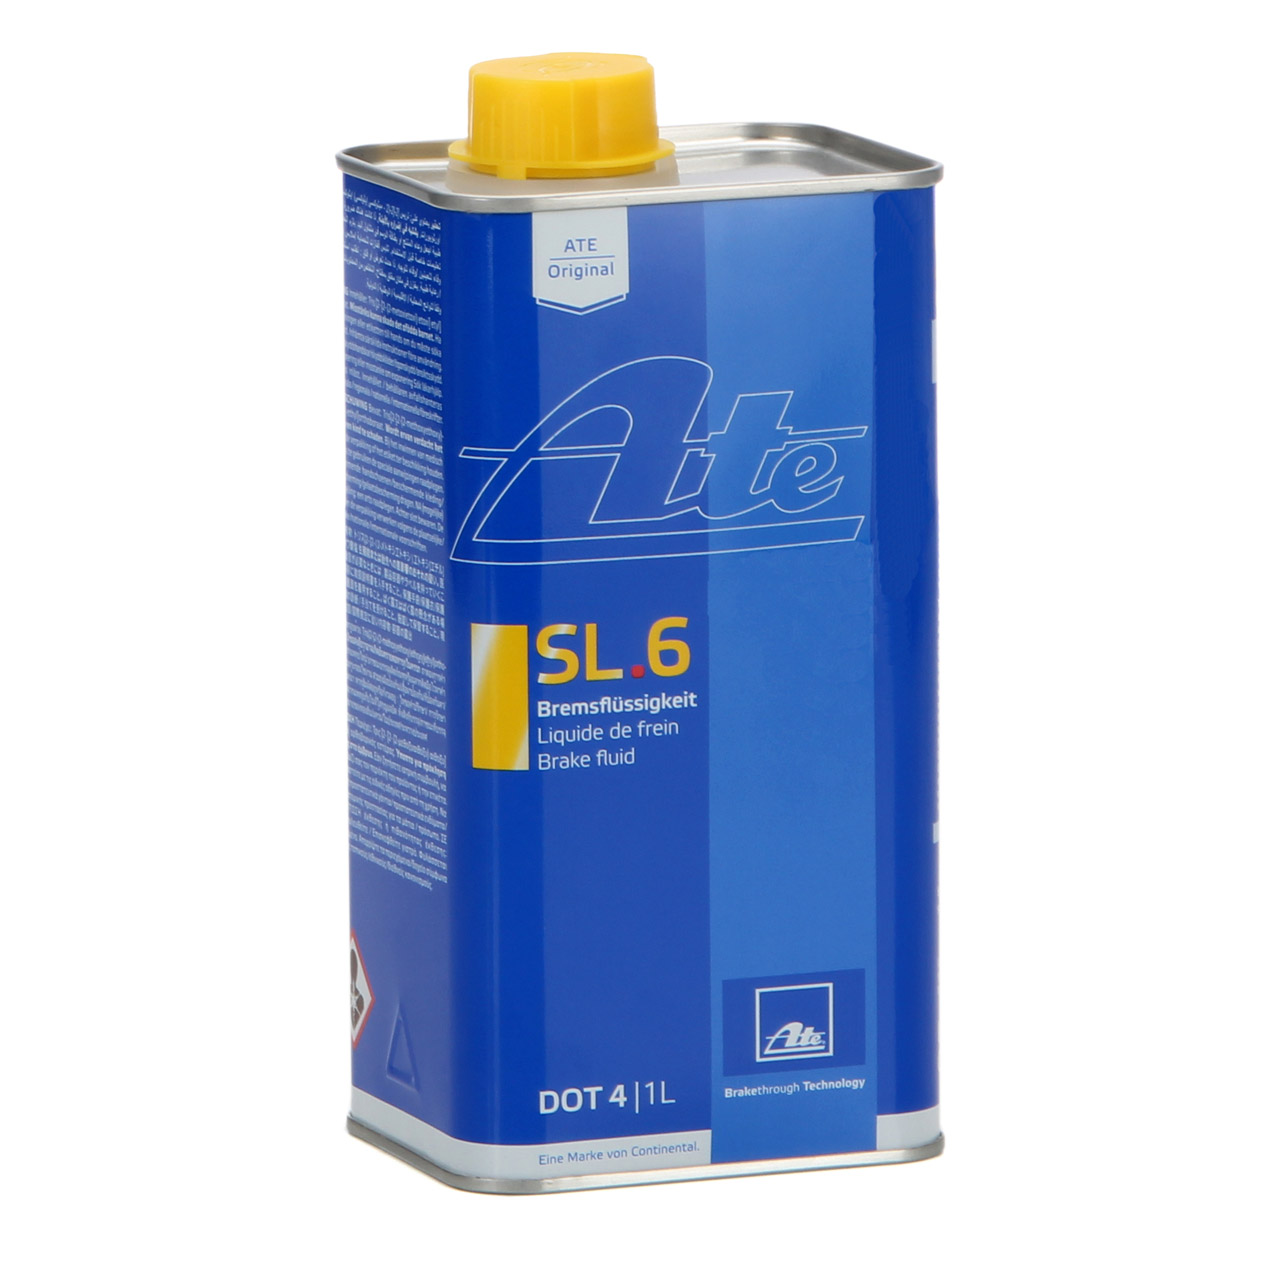 2L 2 Liter ATE 03.9901-6402.2 706402 Bremsflüssigkeit Brake Fluid SL 6 DOT 4